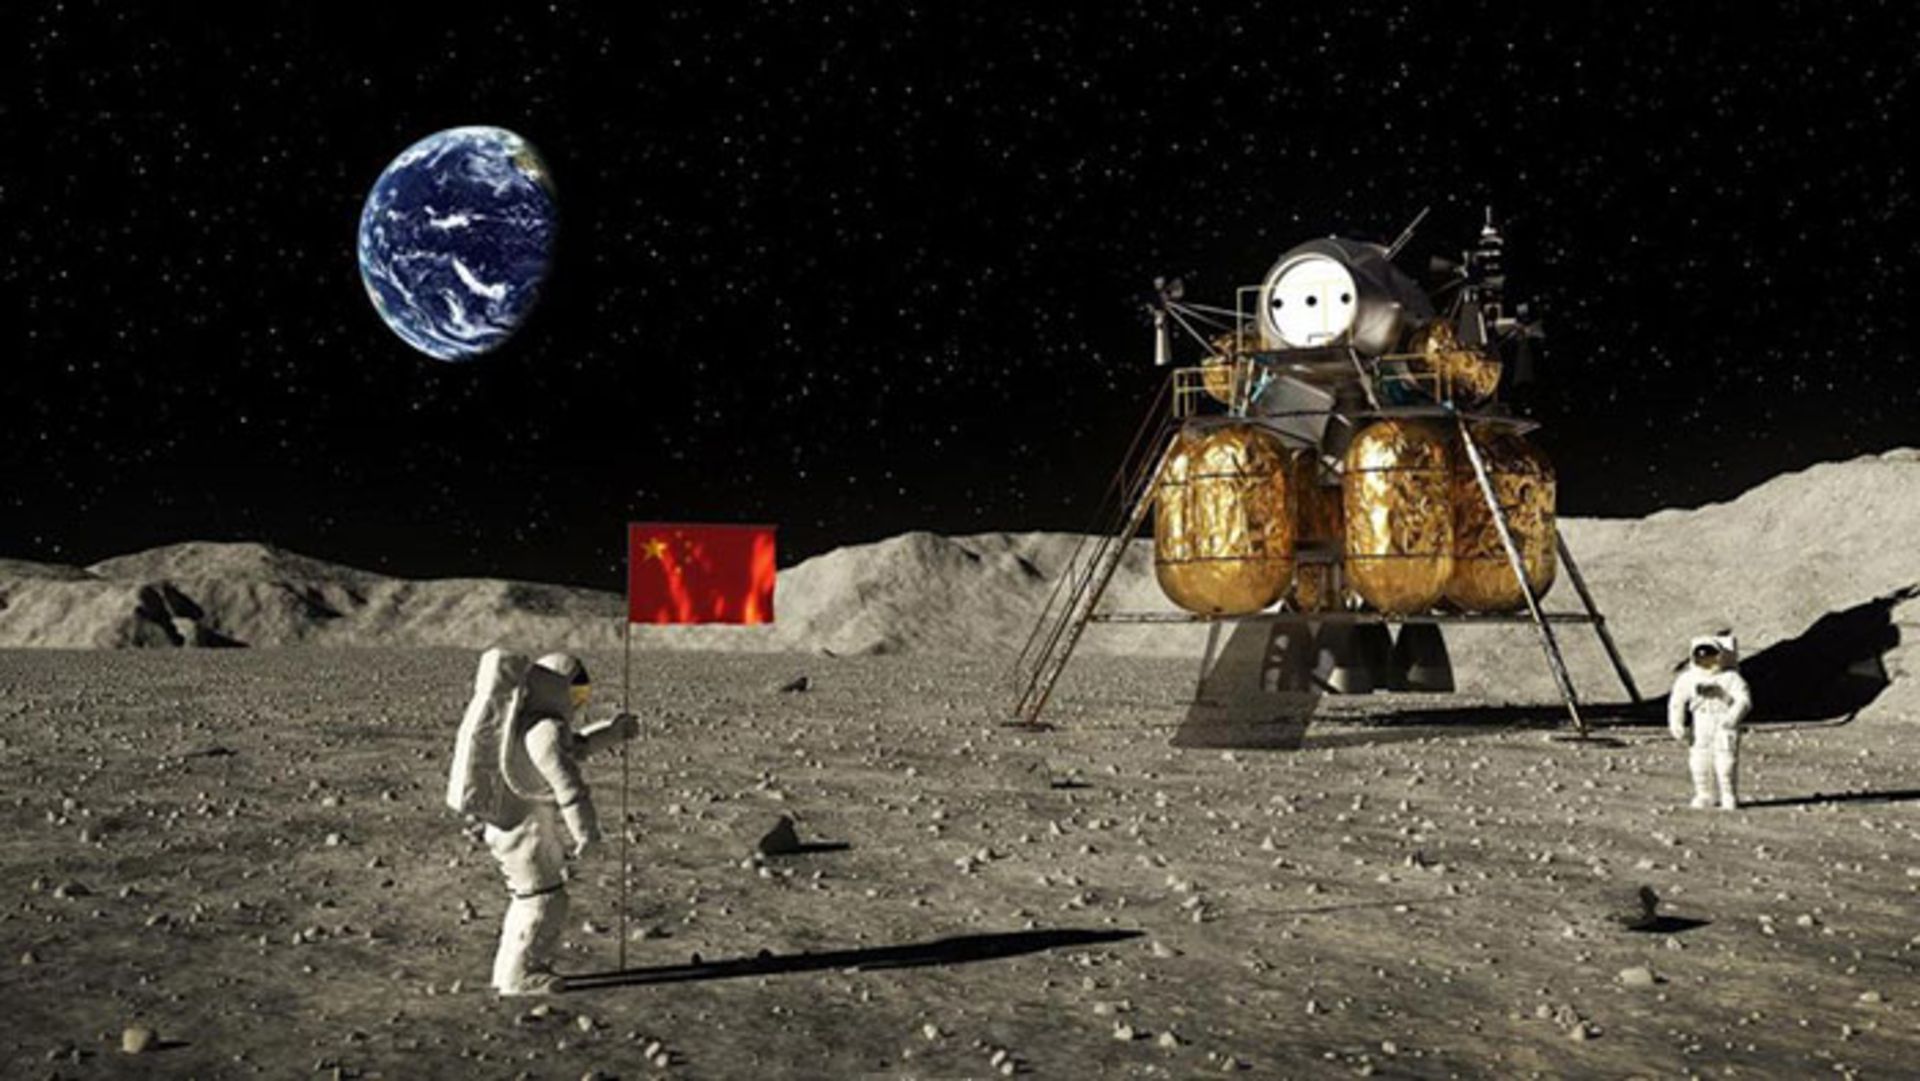 مرجع متخصصين ايران پايگاه ماه / Moon Base